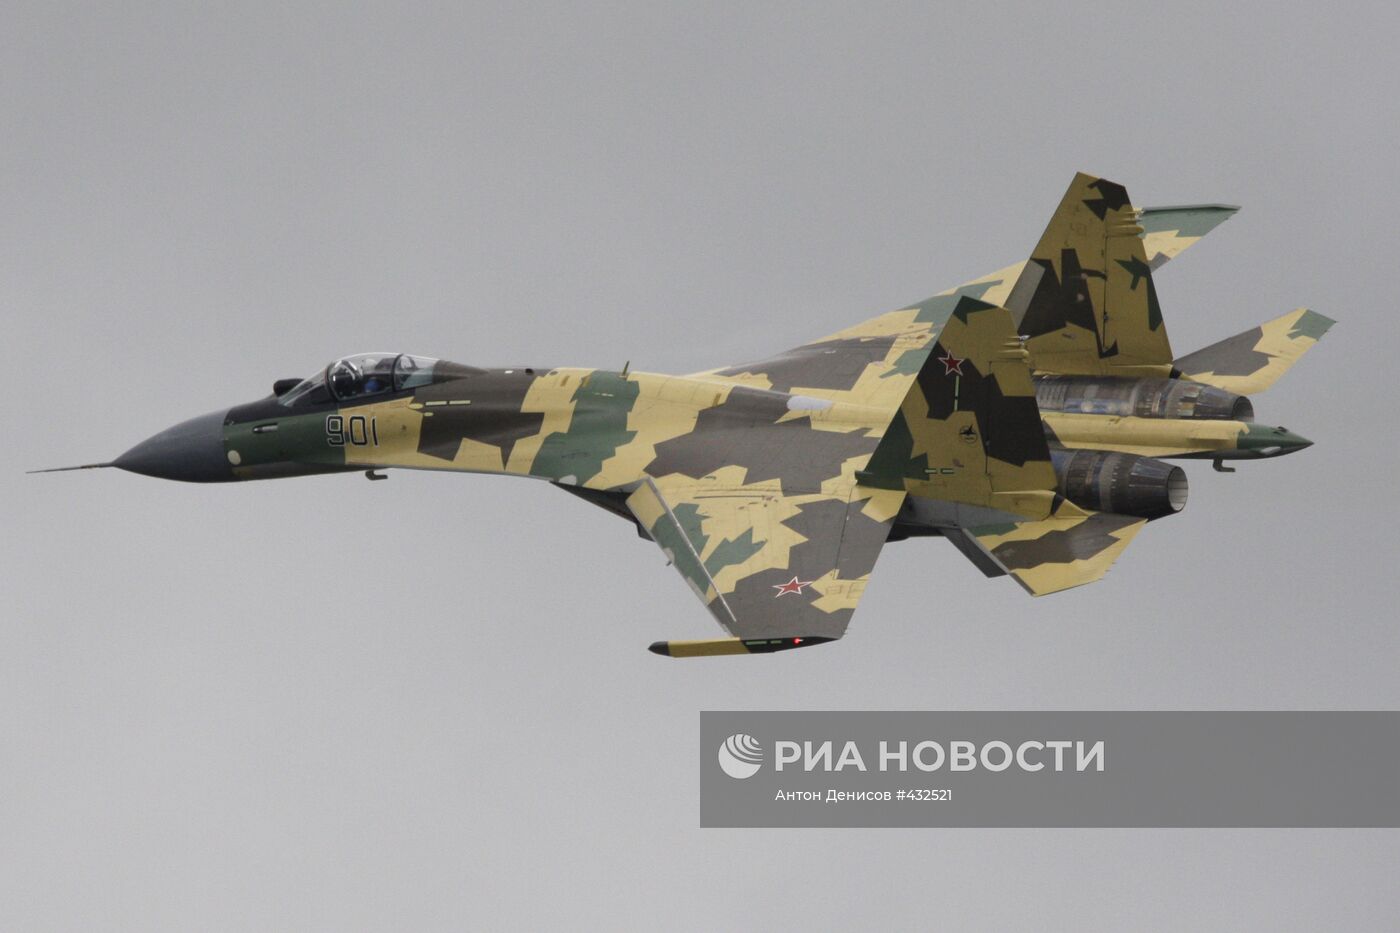 Многоцелевой истребитель Су-35